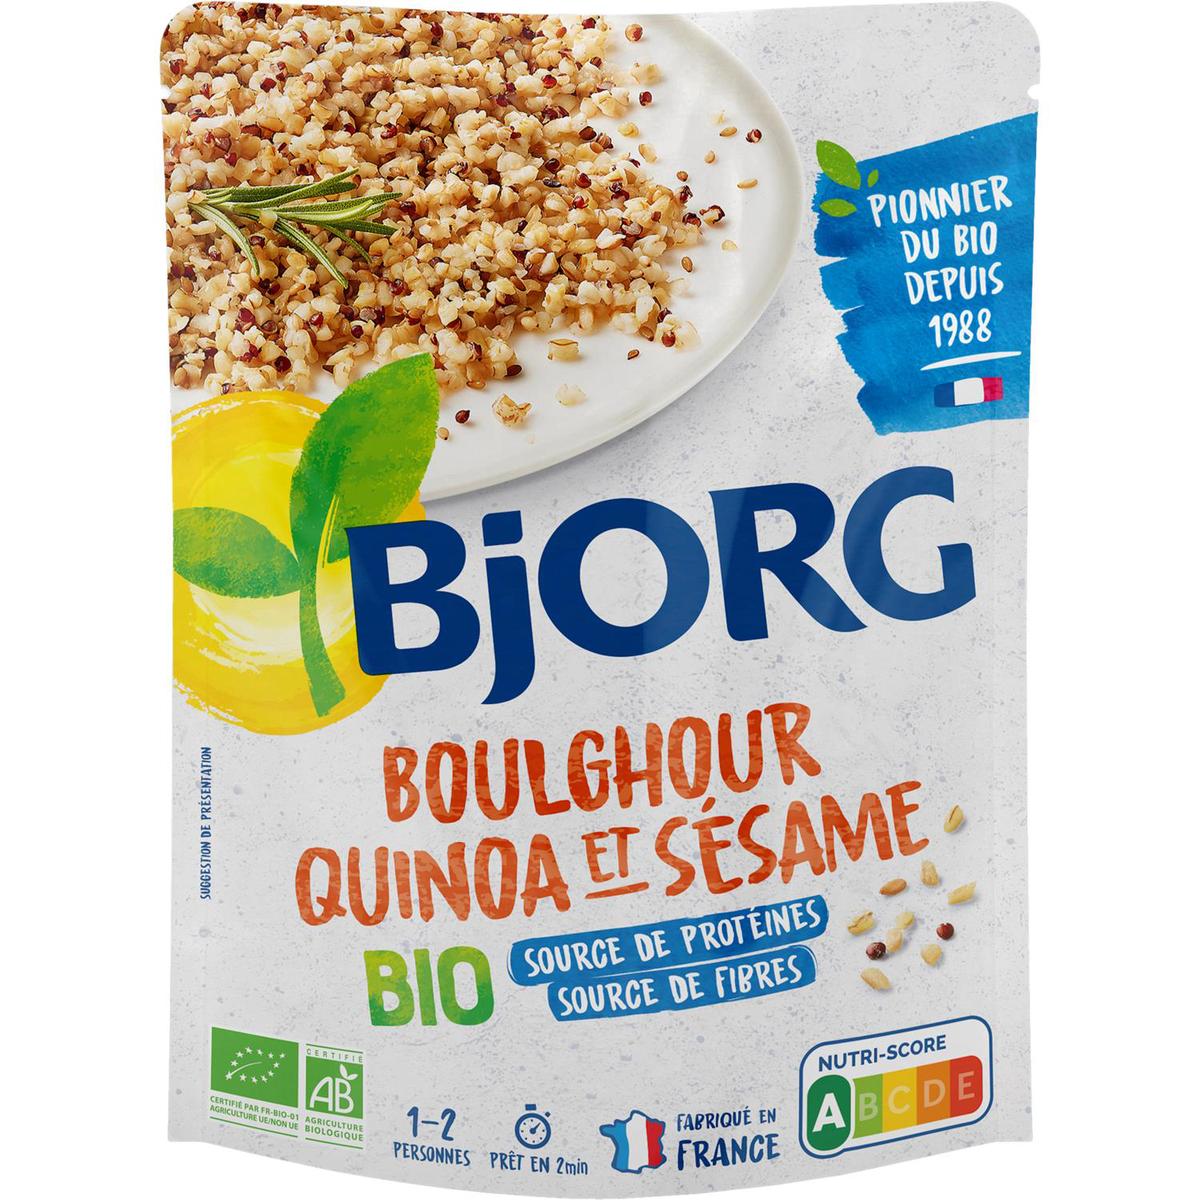 Achat / Vente Bjorg Boulghour Quinoa Sésame Plat Cuisiné Bio, 250g